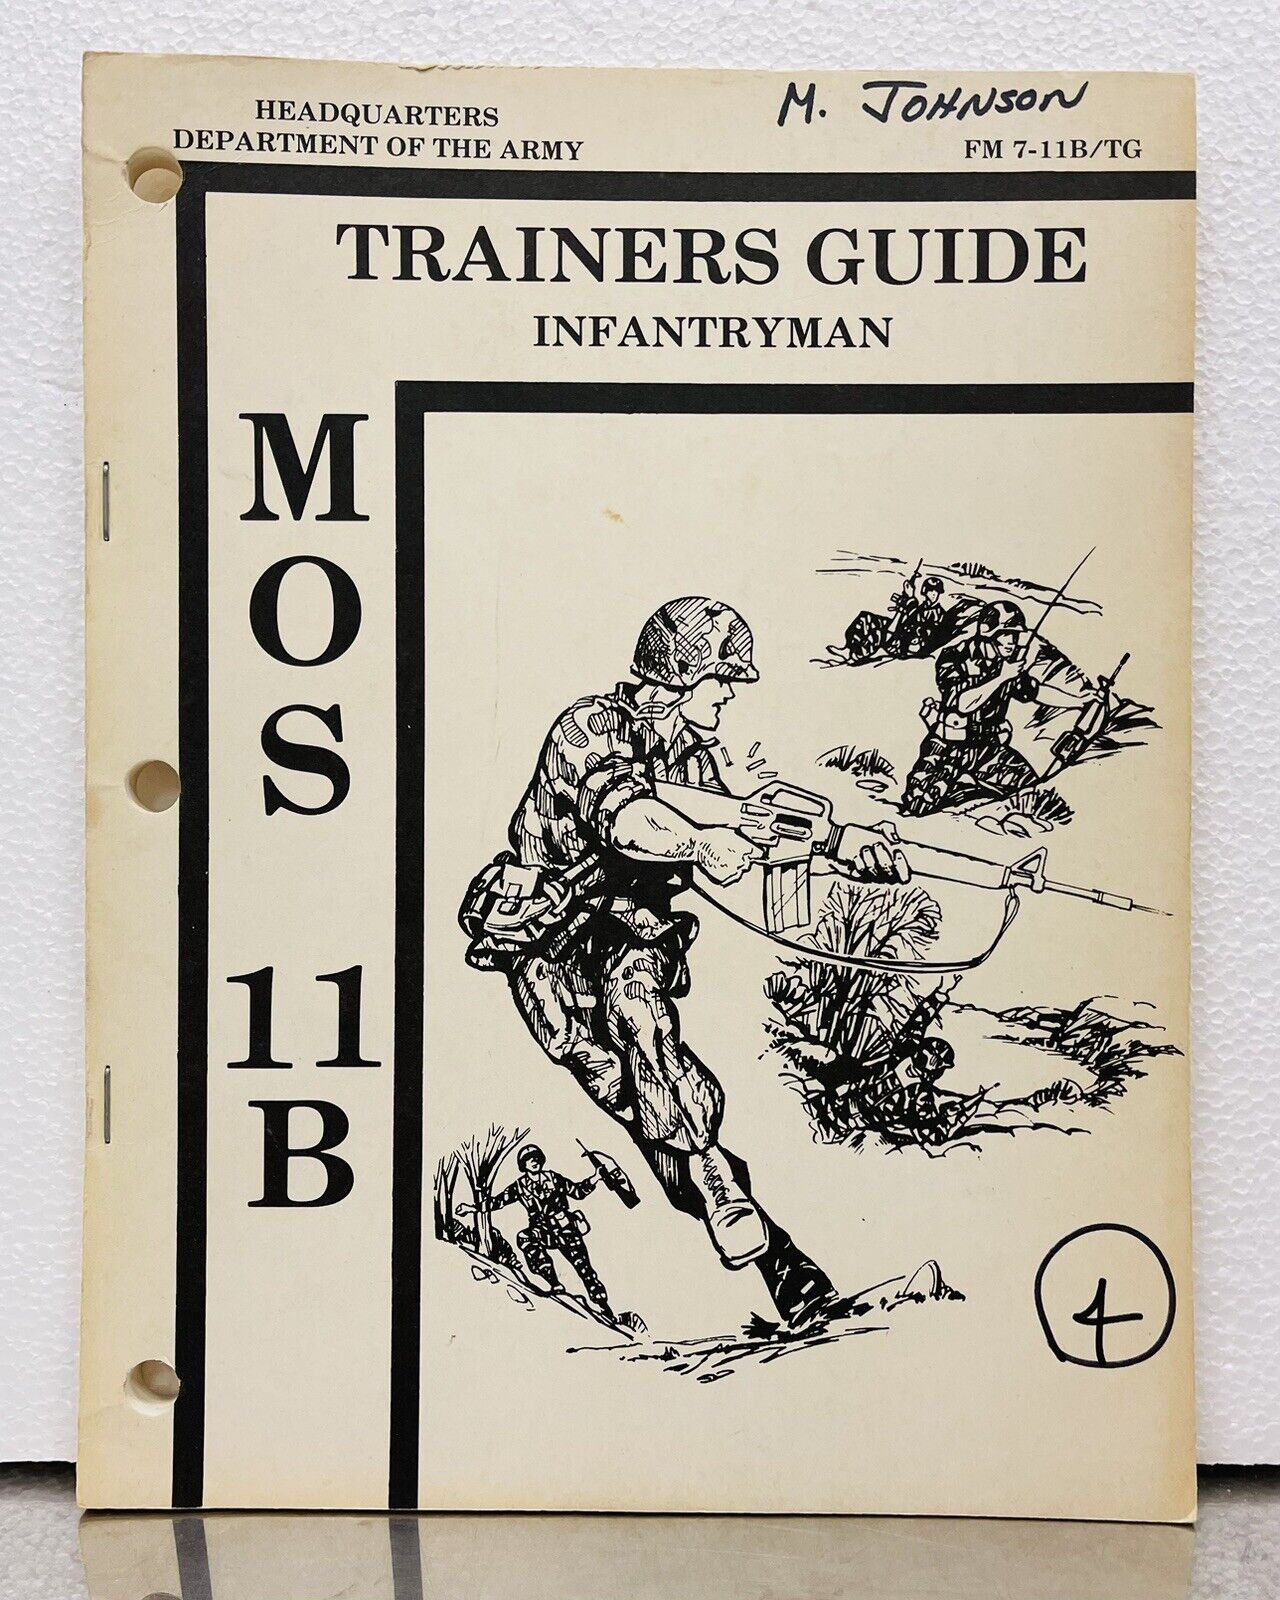 Trainer’s Guide Infantry MOS 11B September 1982